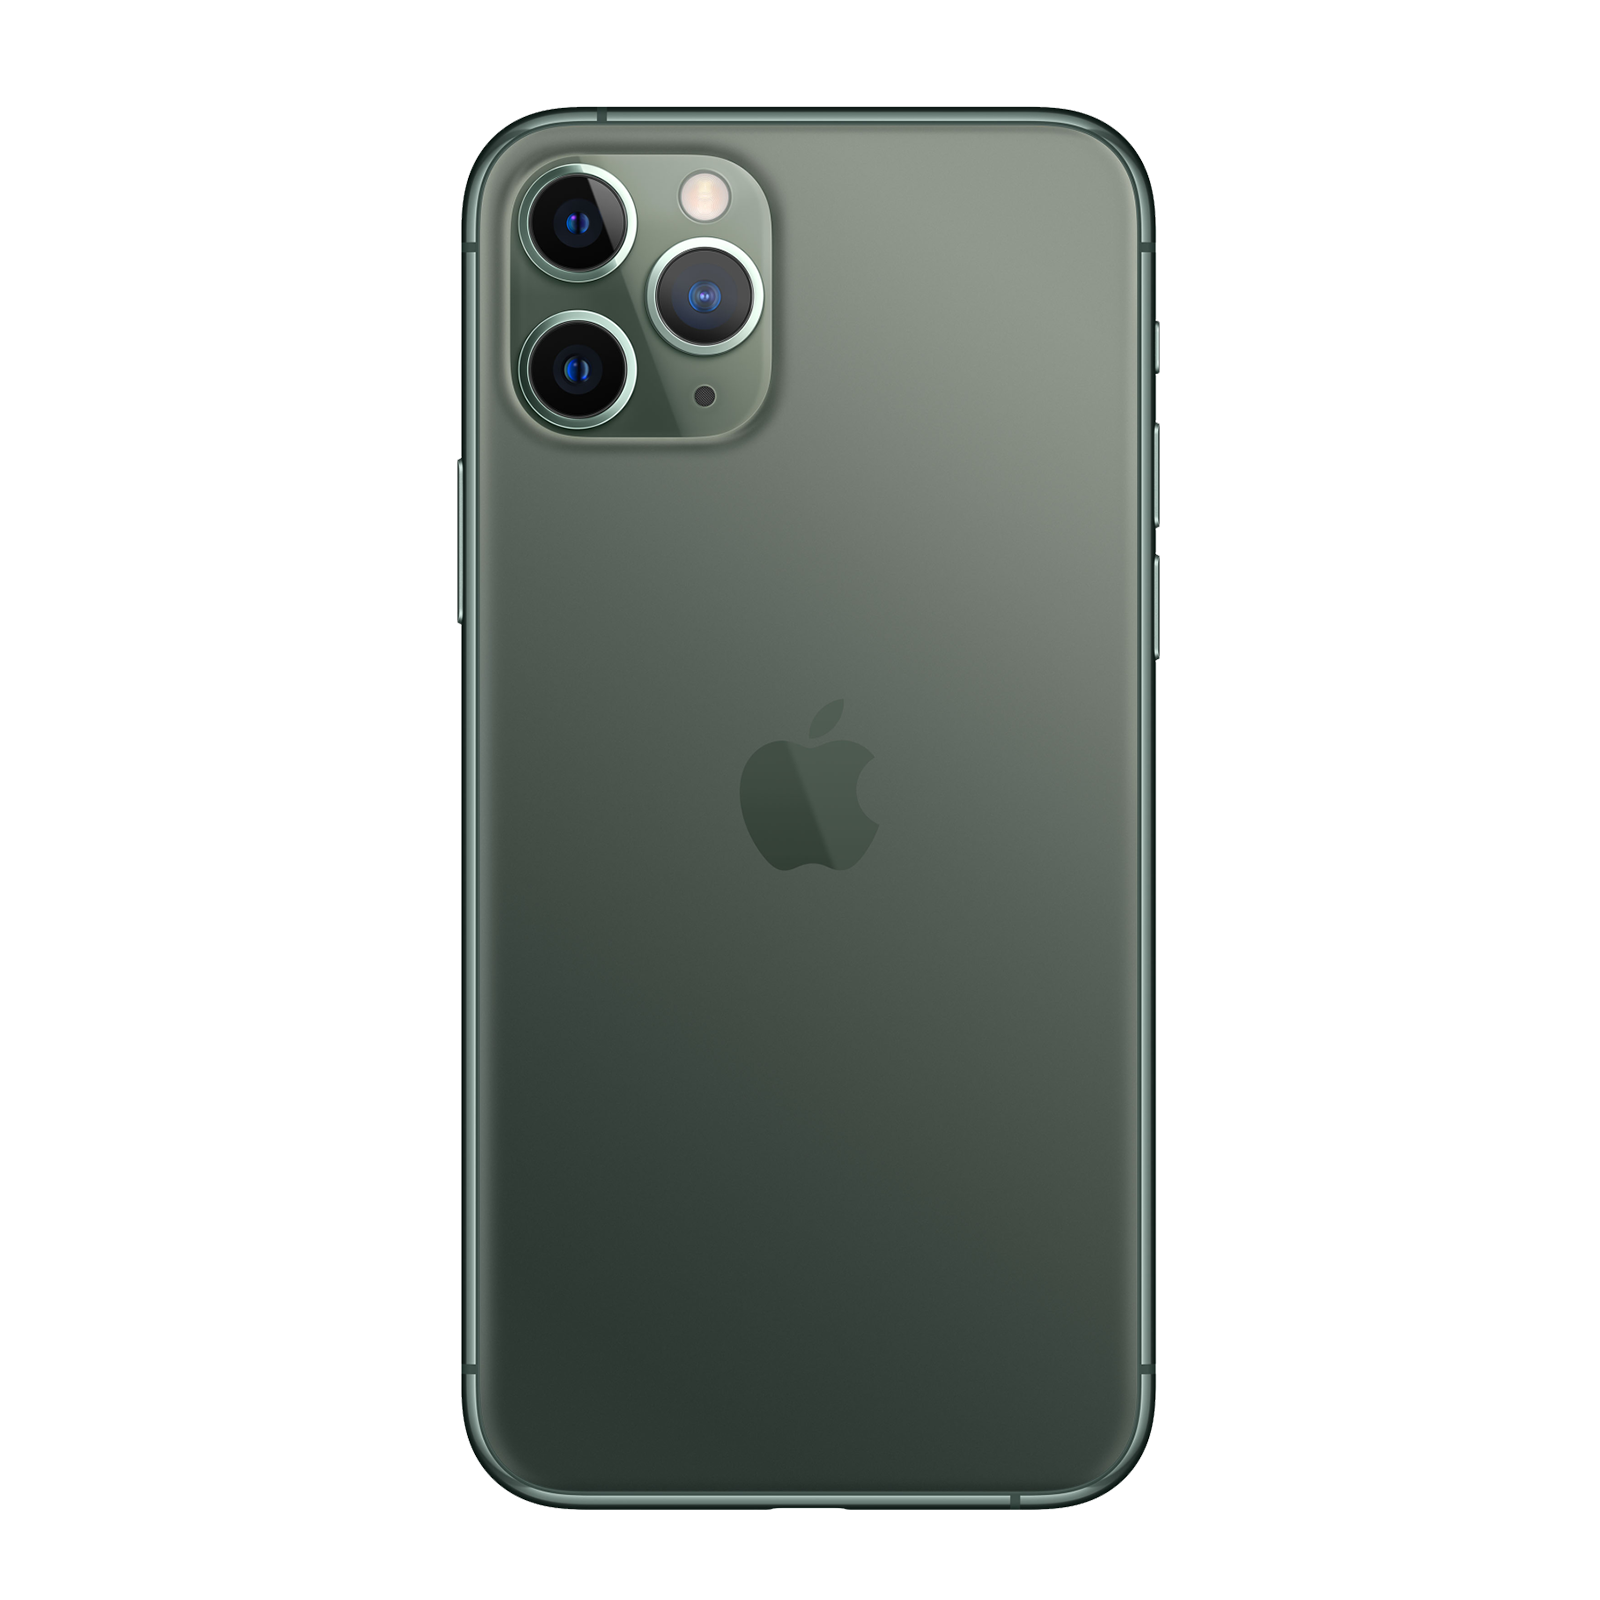 Apple iPhone 11 Pro 64GB Midnight Green Fair - Unlocked